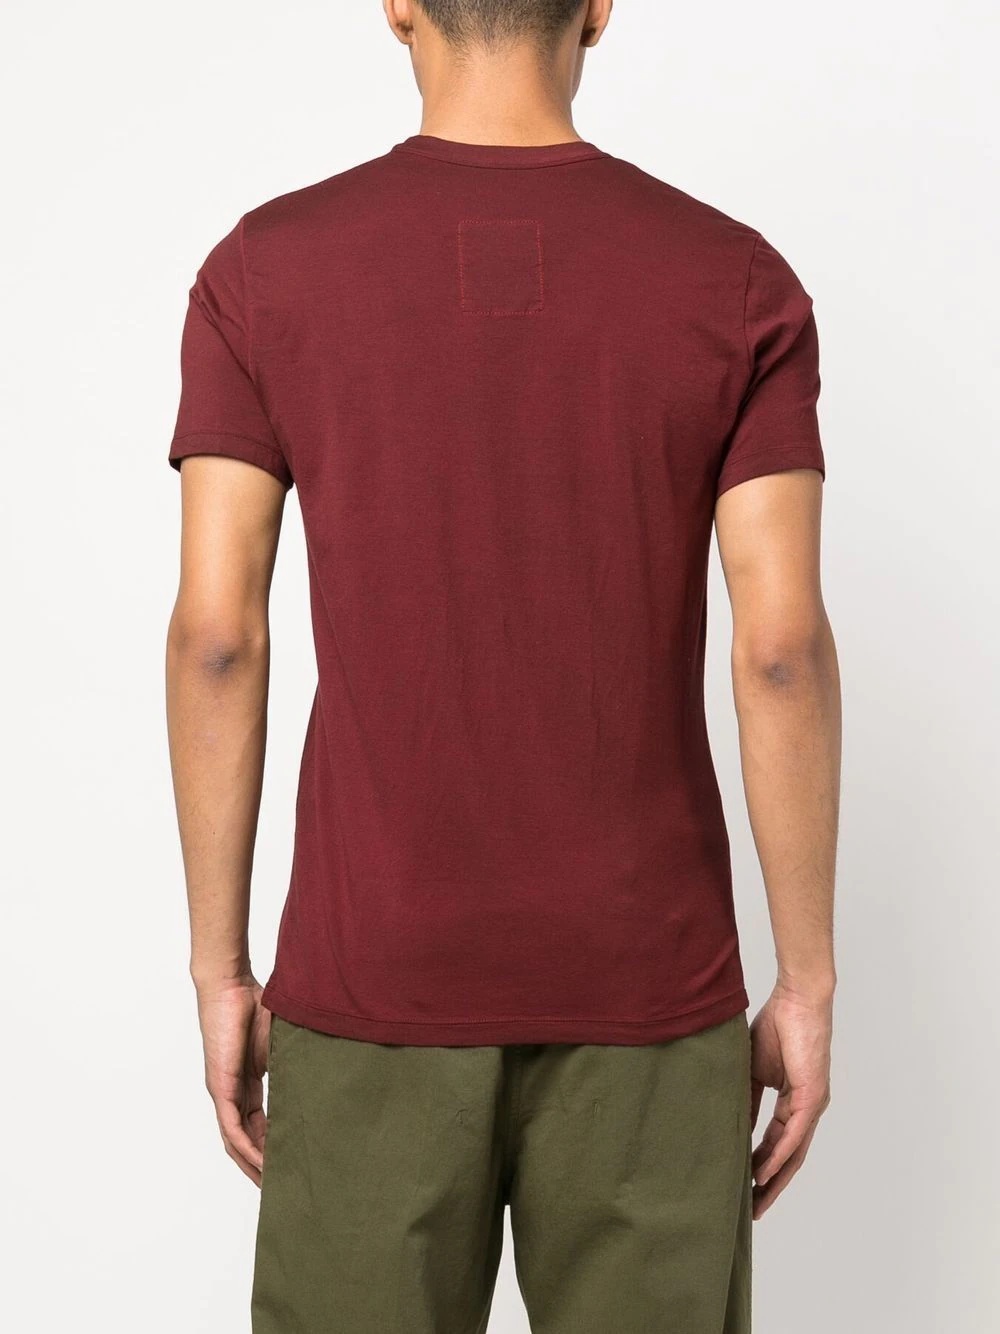 short-sleeved jersey T-shirt - 4